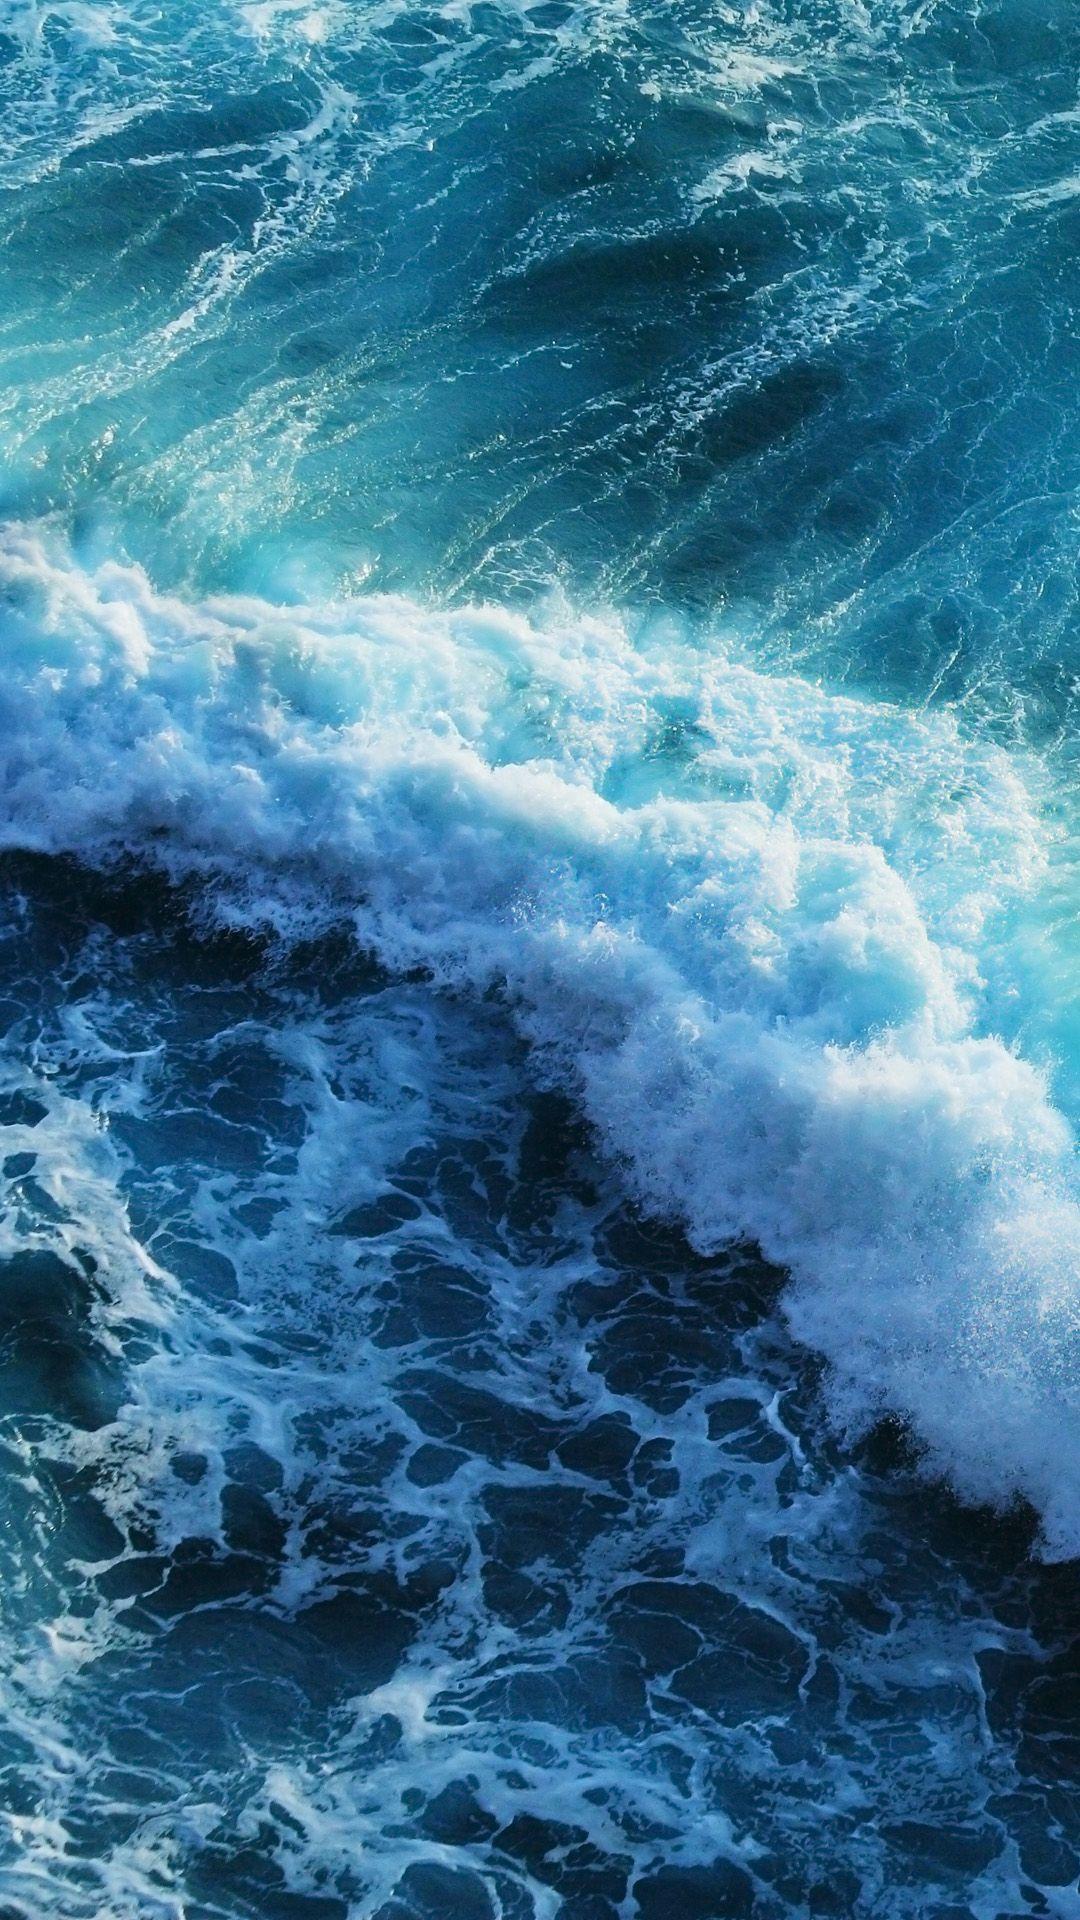 Hãy cập nhật cho mình một hình nền sóng biển đẹp mắt trên iPhone để tận hưởng cảm giác bình yên và sự kỳ diệu của đại dương. Hình ảnh chất lượng cao sẽ đem lại trải nghiệm tuyệt vời khi sử dụng điện thoại của bạn. Đừng để bất kỳ ai chê bai vẻ đẹp của màn hình chính của bạn nữa!